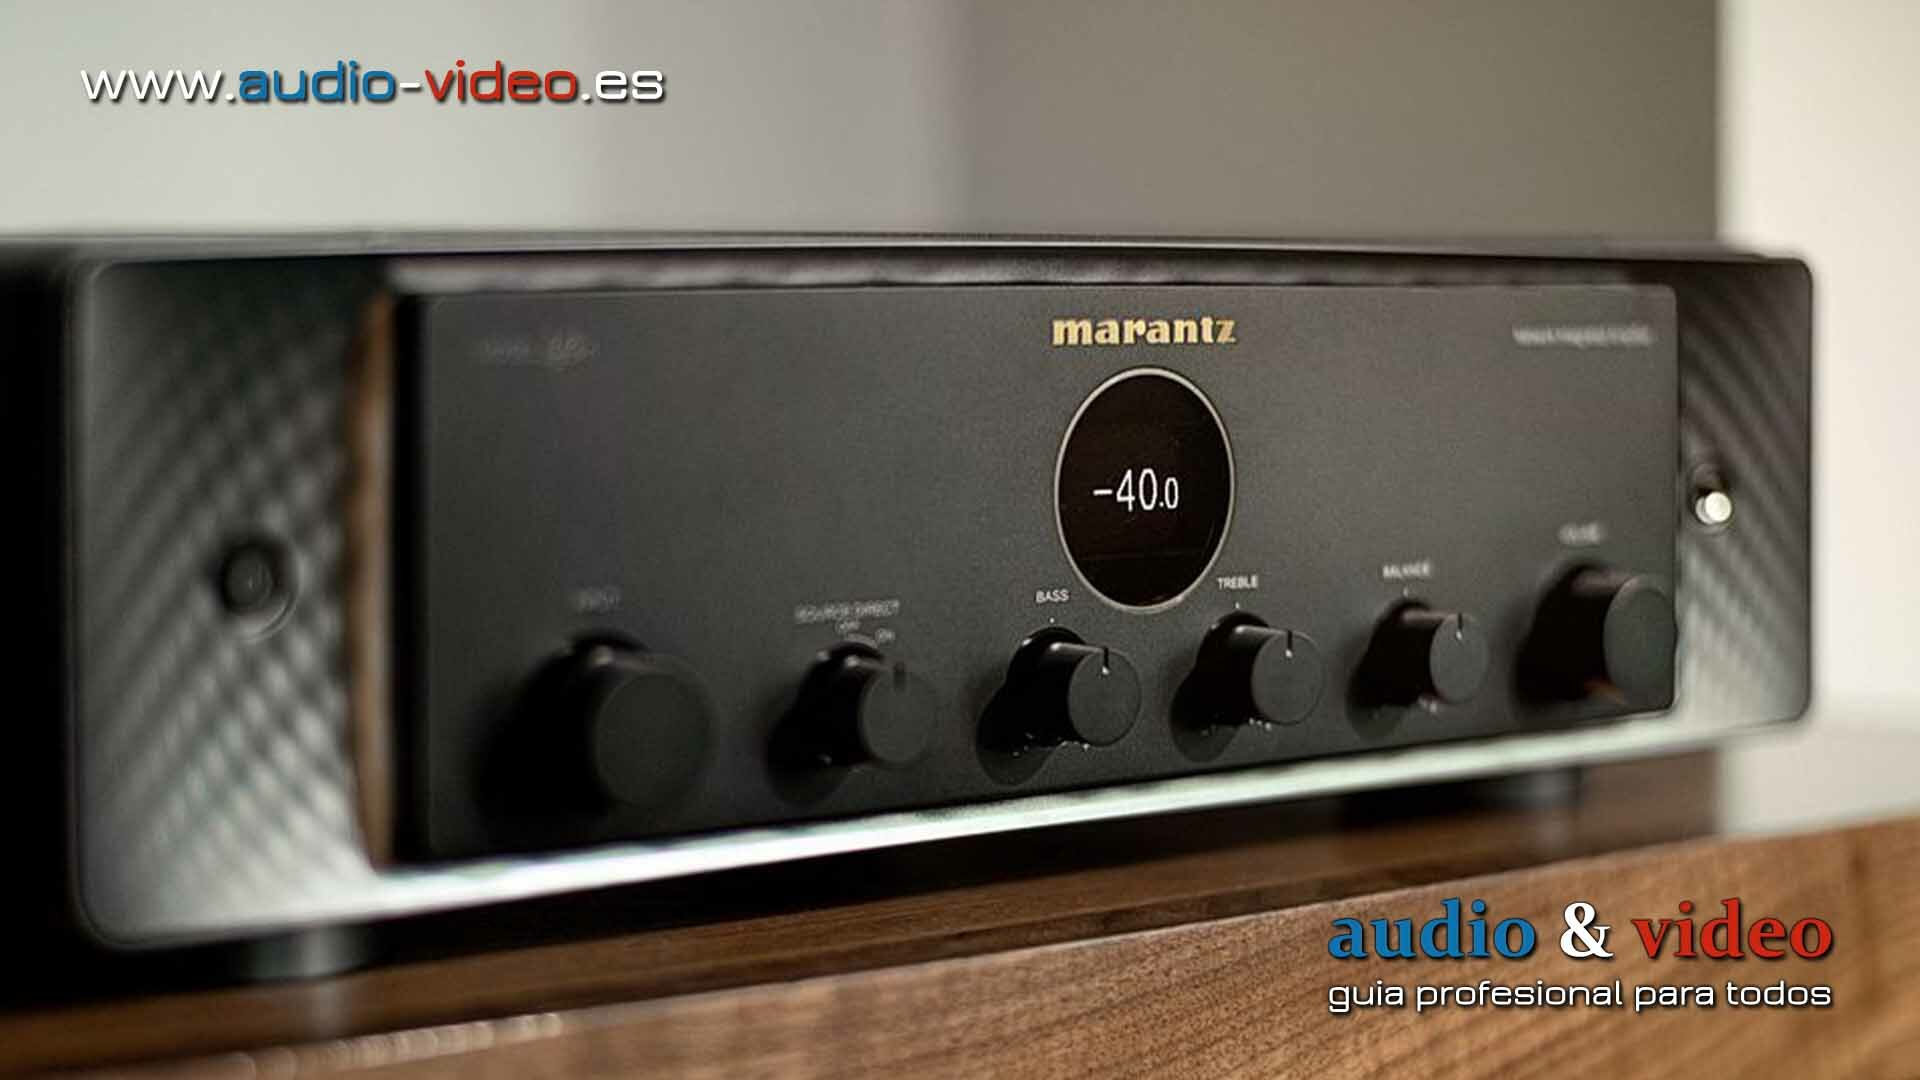 Marantz – Model 40n – amplificador “más” integrado